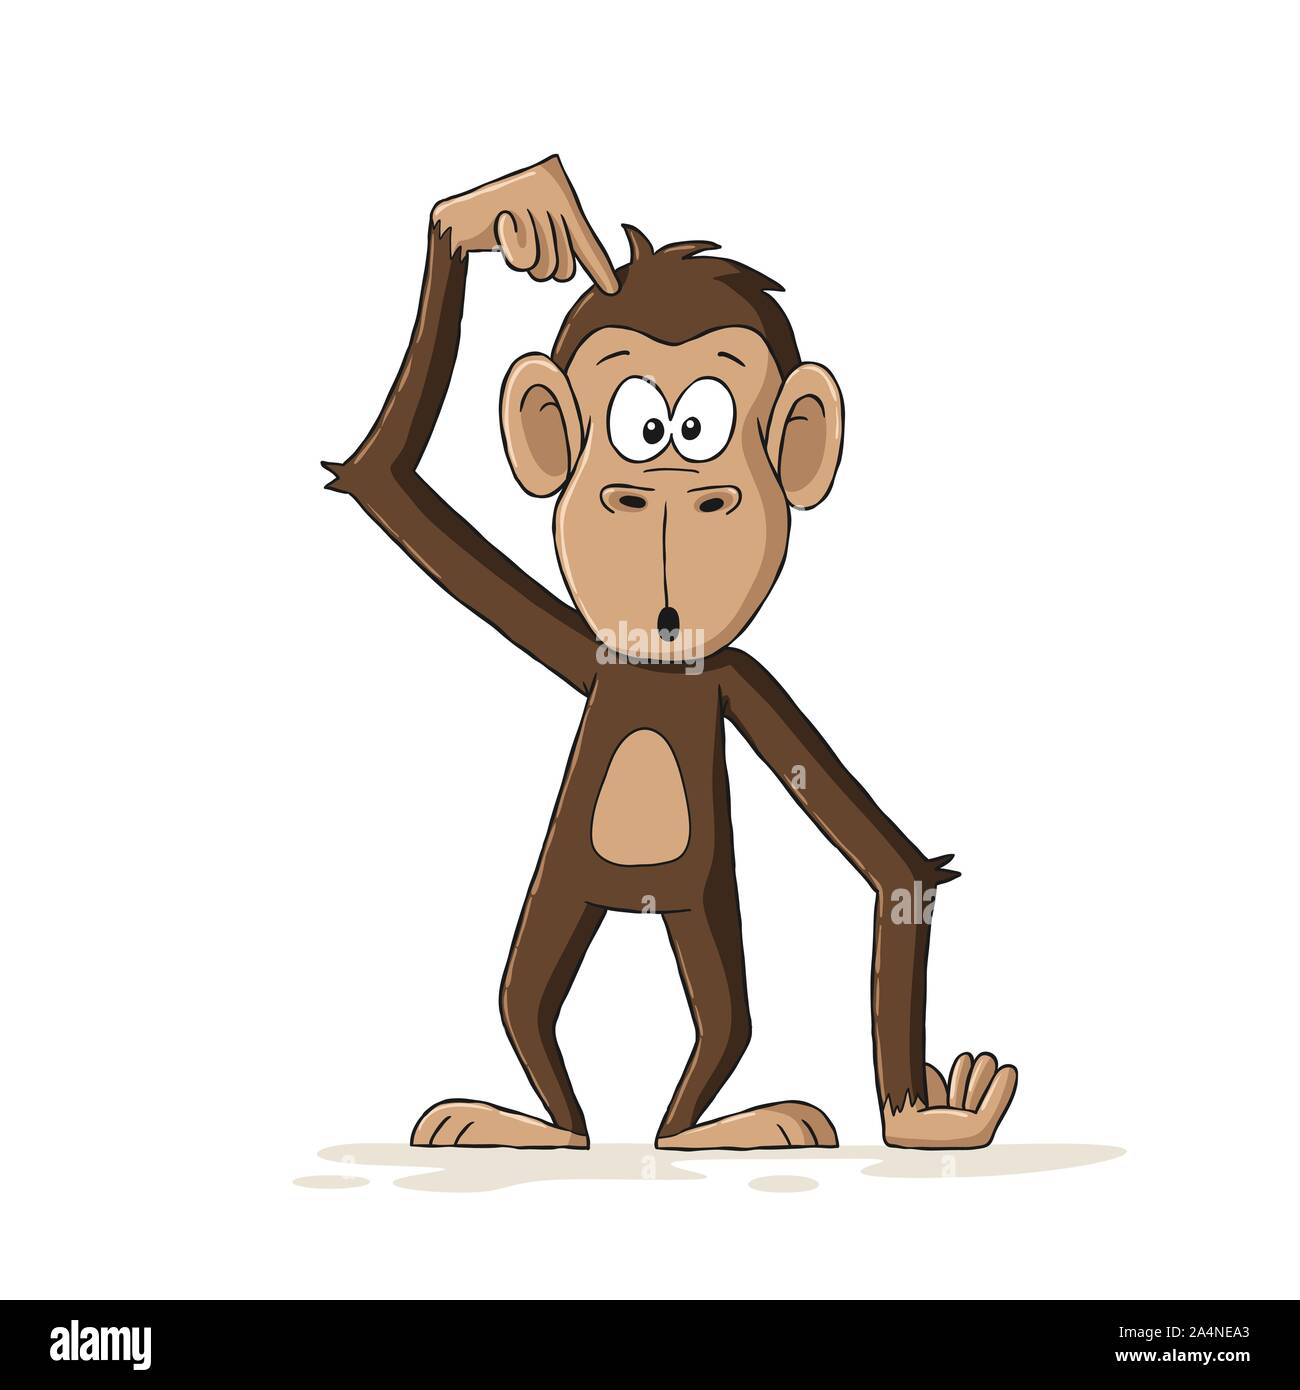 Lustige cartoon Monkey. Hand Vector Illustration mit separaten Ebenen gezeichnet. Stock Vektor